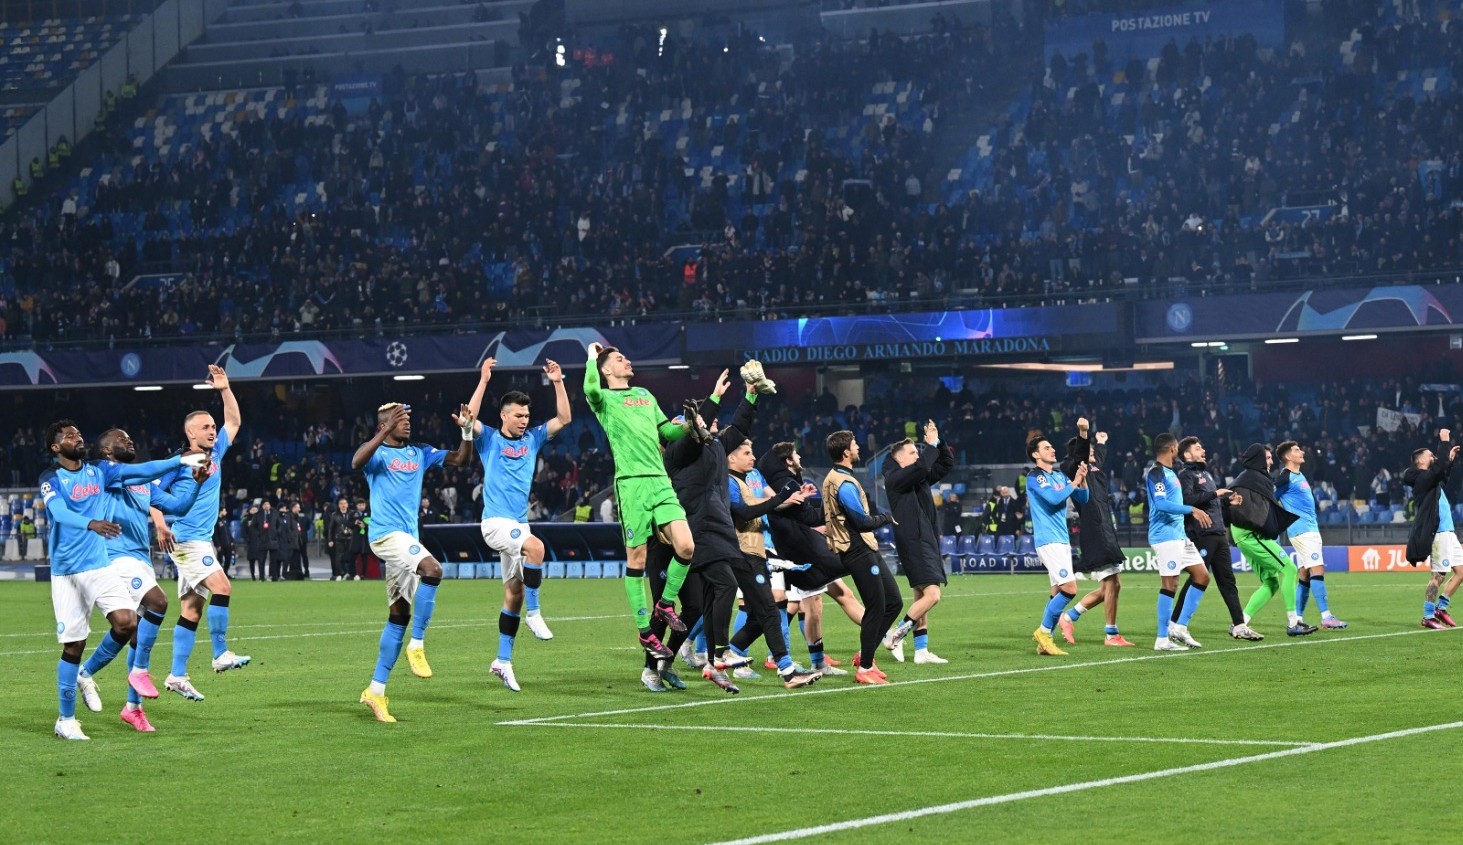 Napoli bate Frankfurt e chega nas quartas da Champions League pela 1ª vez em sua história